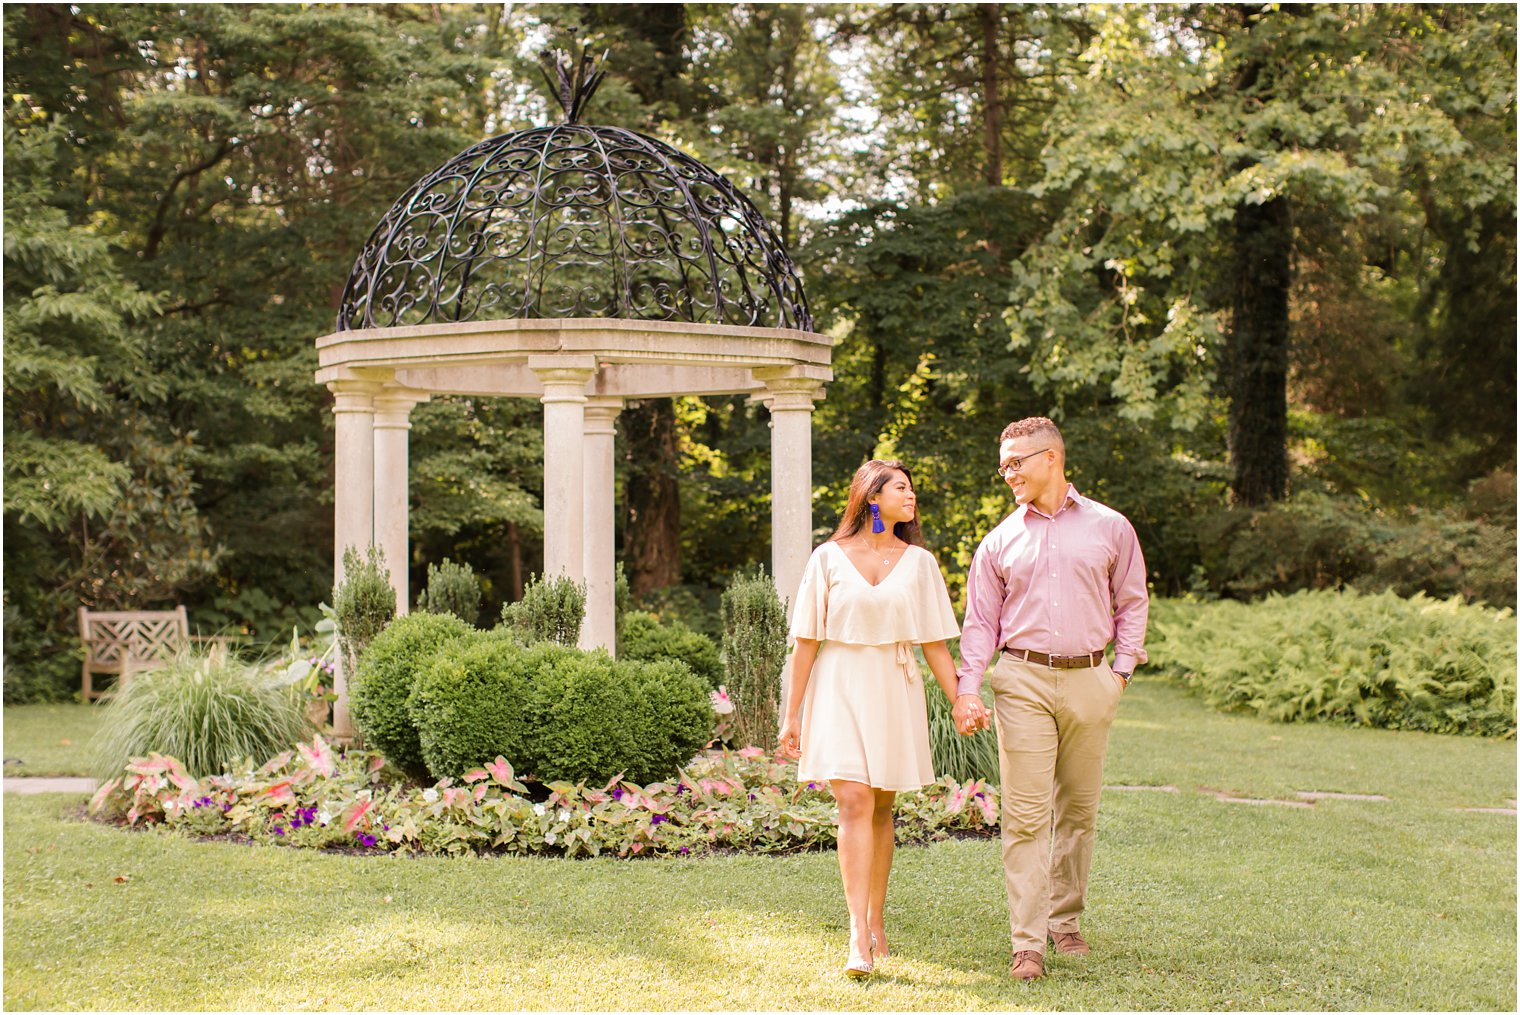 NJ wedding photographer Idalia Photography captures Sayen Gardens engagement session